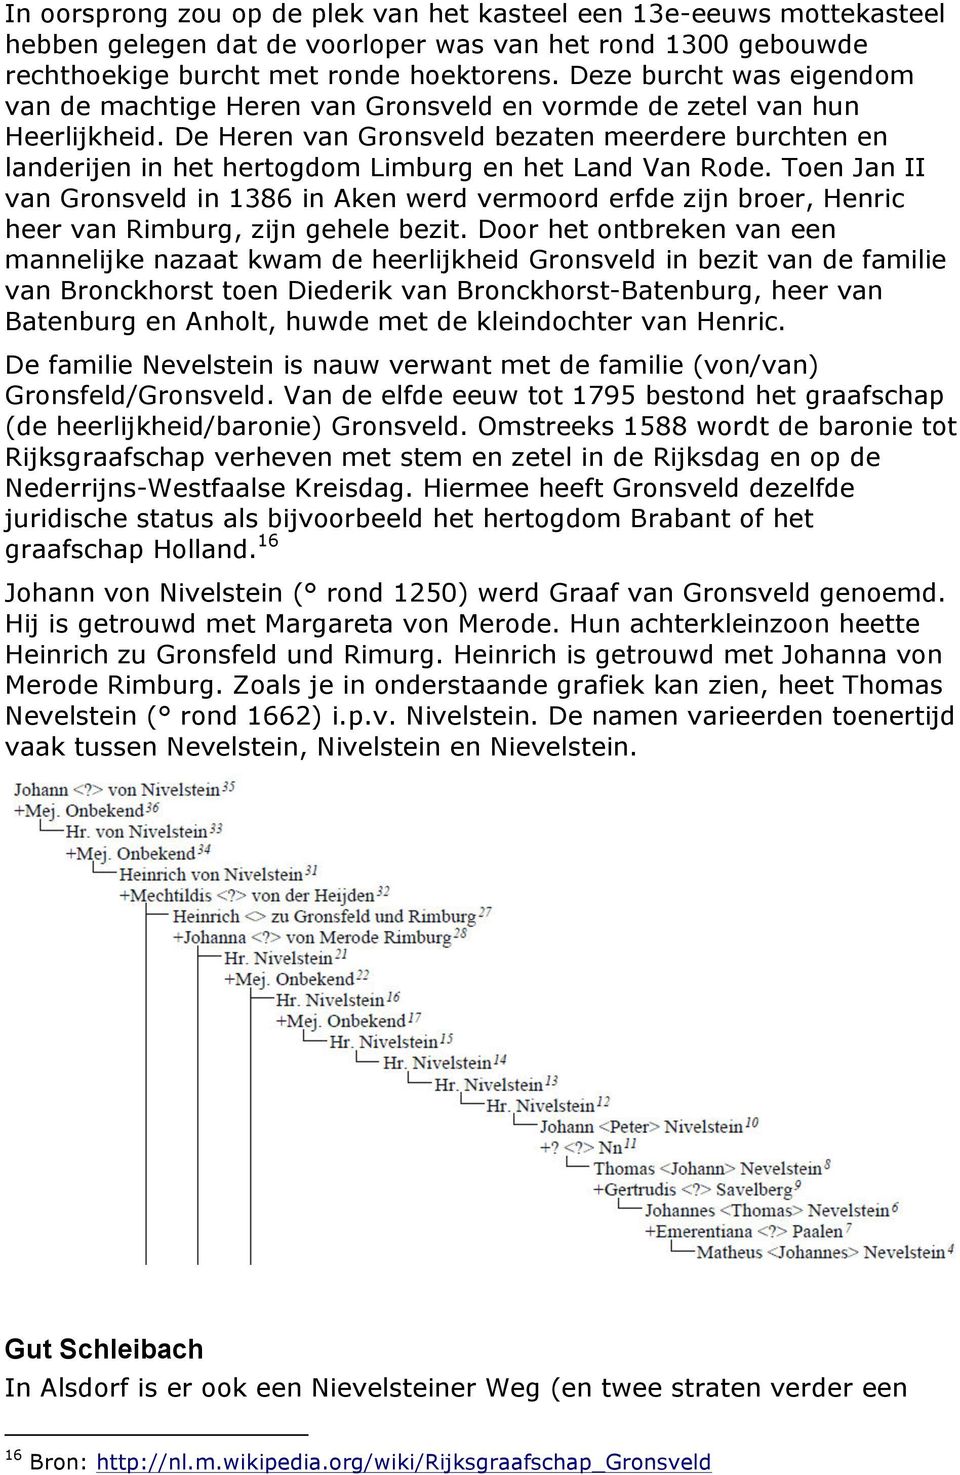 De Heren van Gronsveld bezaten meerdere burchten en landerijen in het hertogdom Limburg en het Land Van Rode.